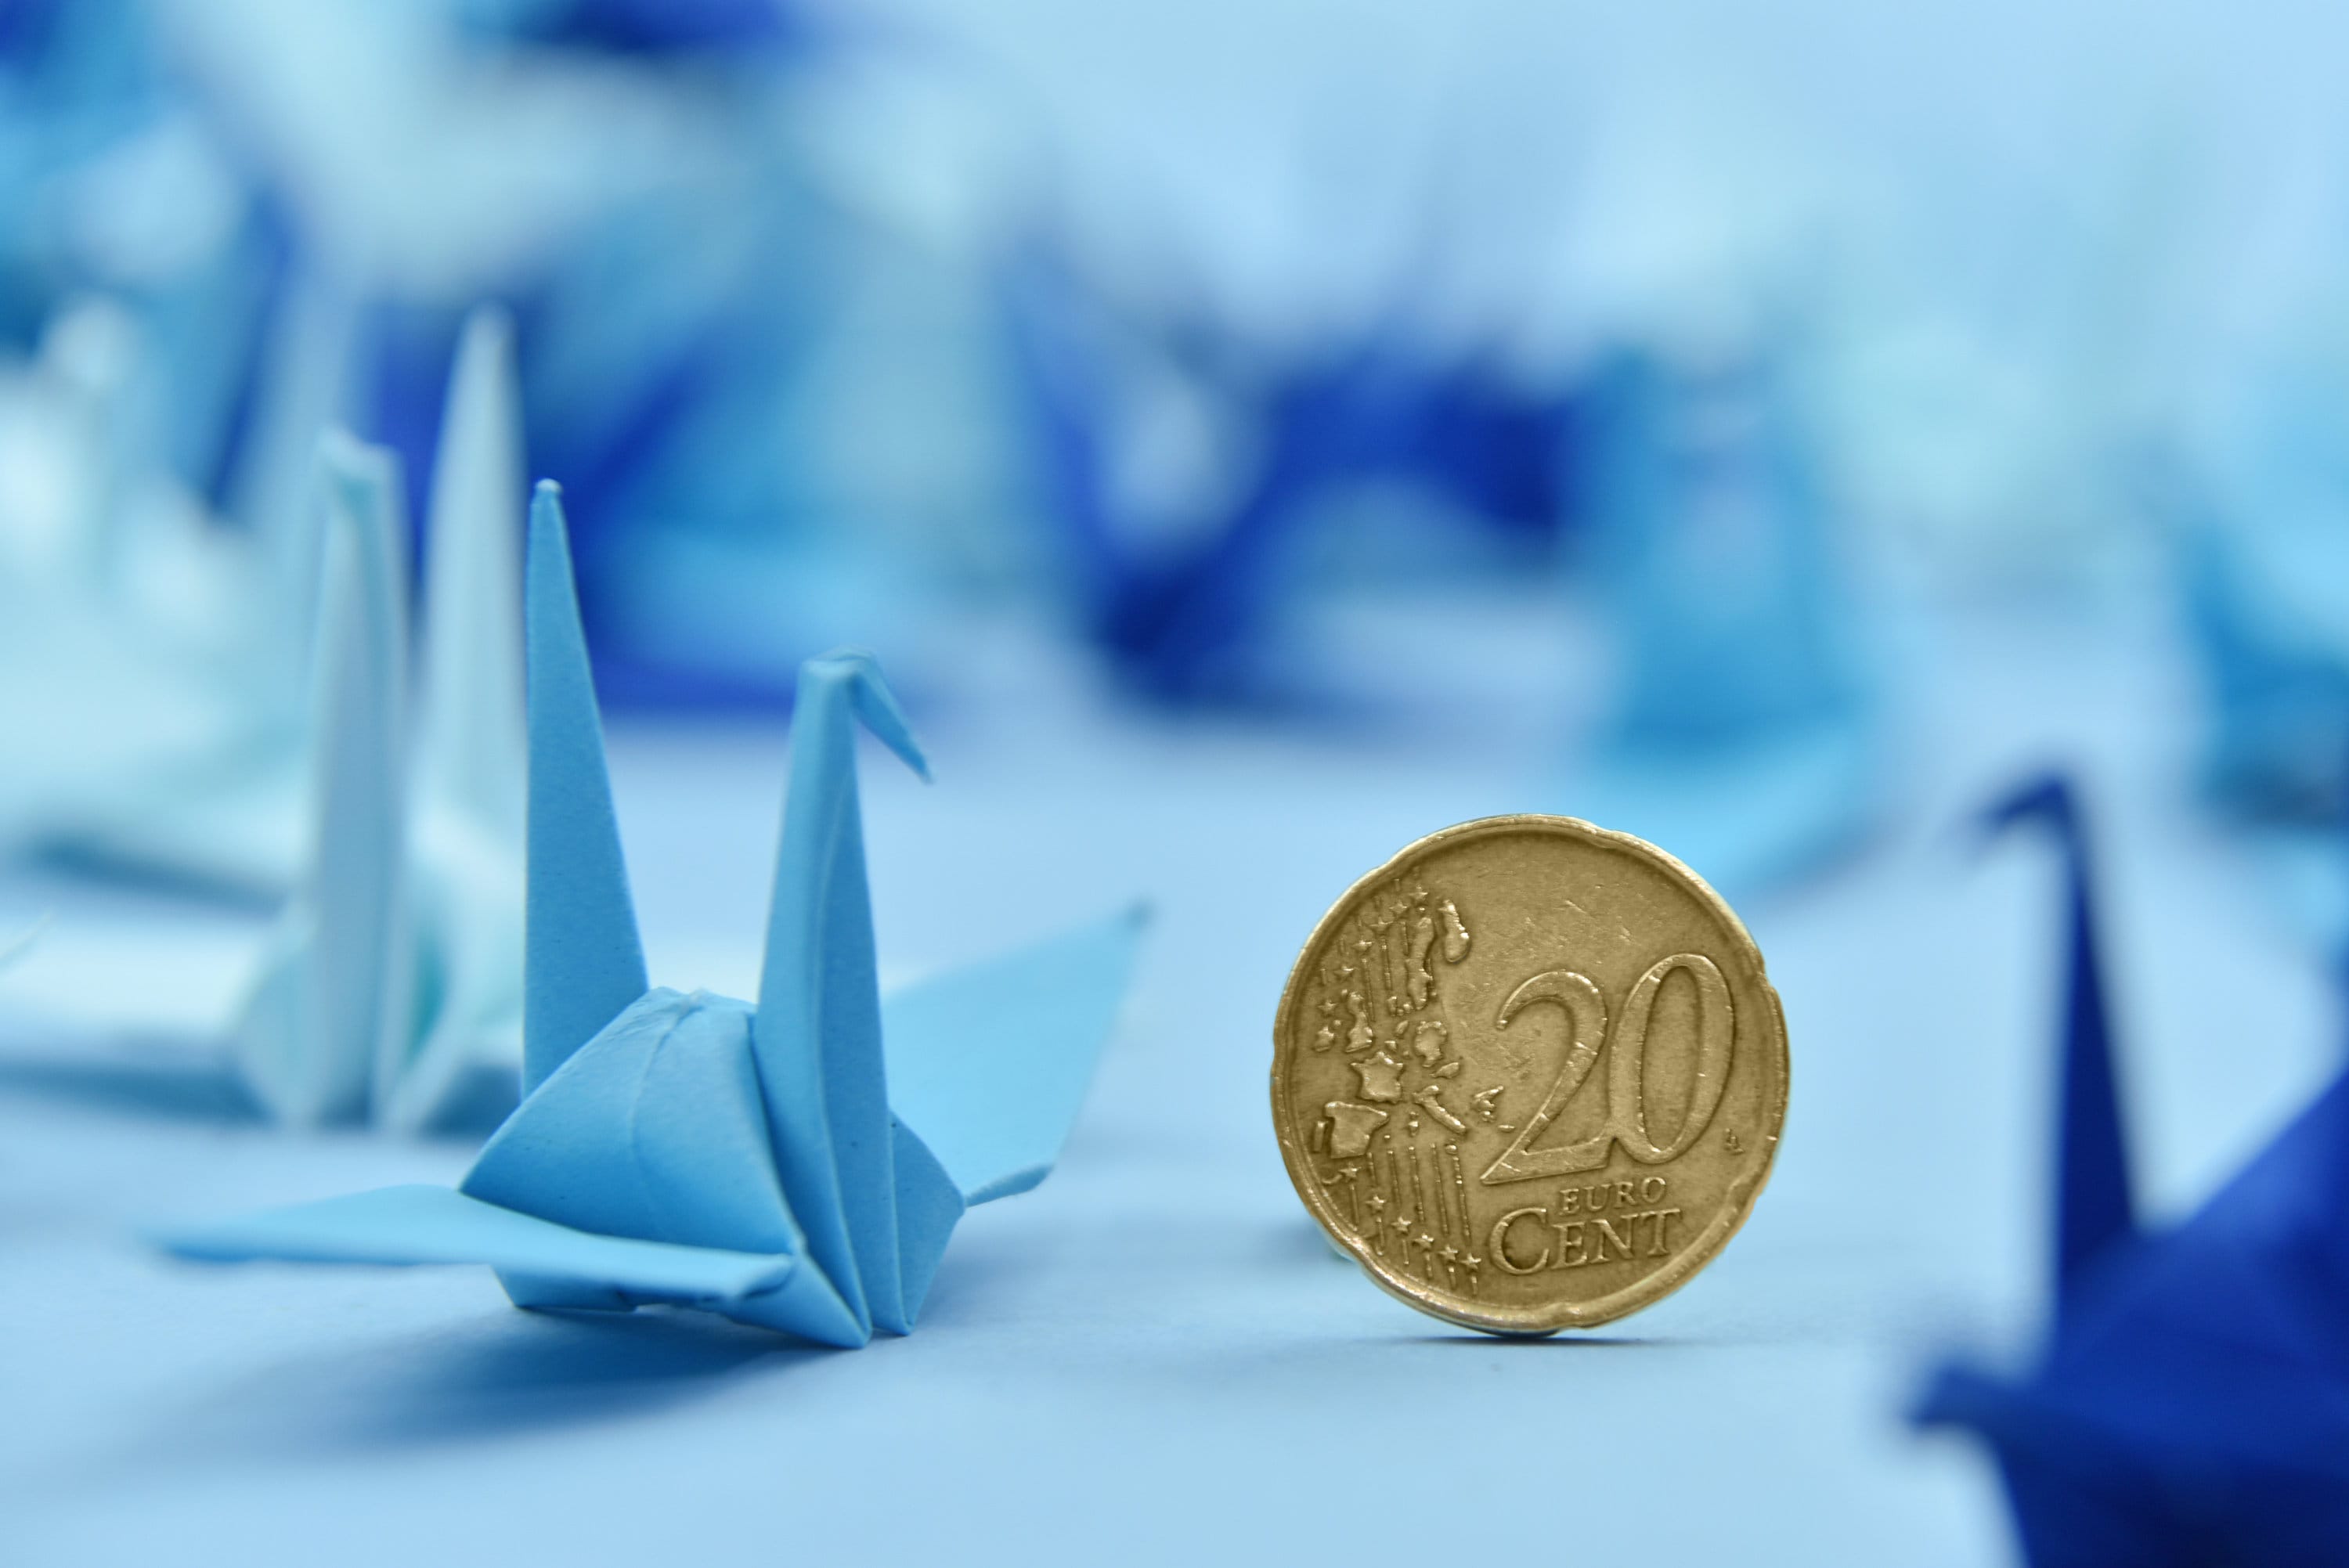 1000 Grullas de papel de origami Azul marino Grúas de origami de 3 pulgadas y 7,5 cm - Origamipolly - Prefabricadas para decoración japonesa de bodas navideñas